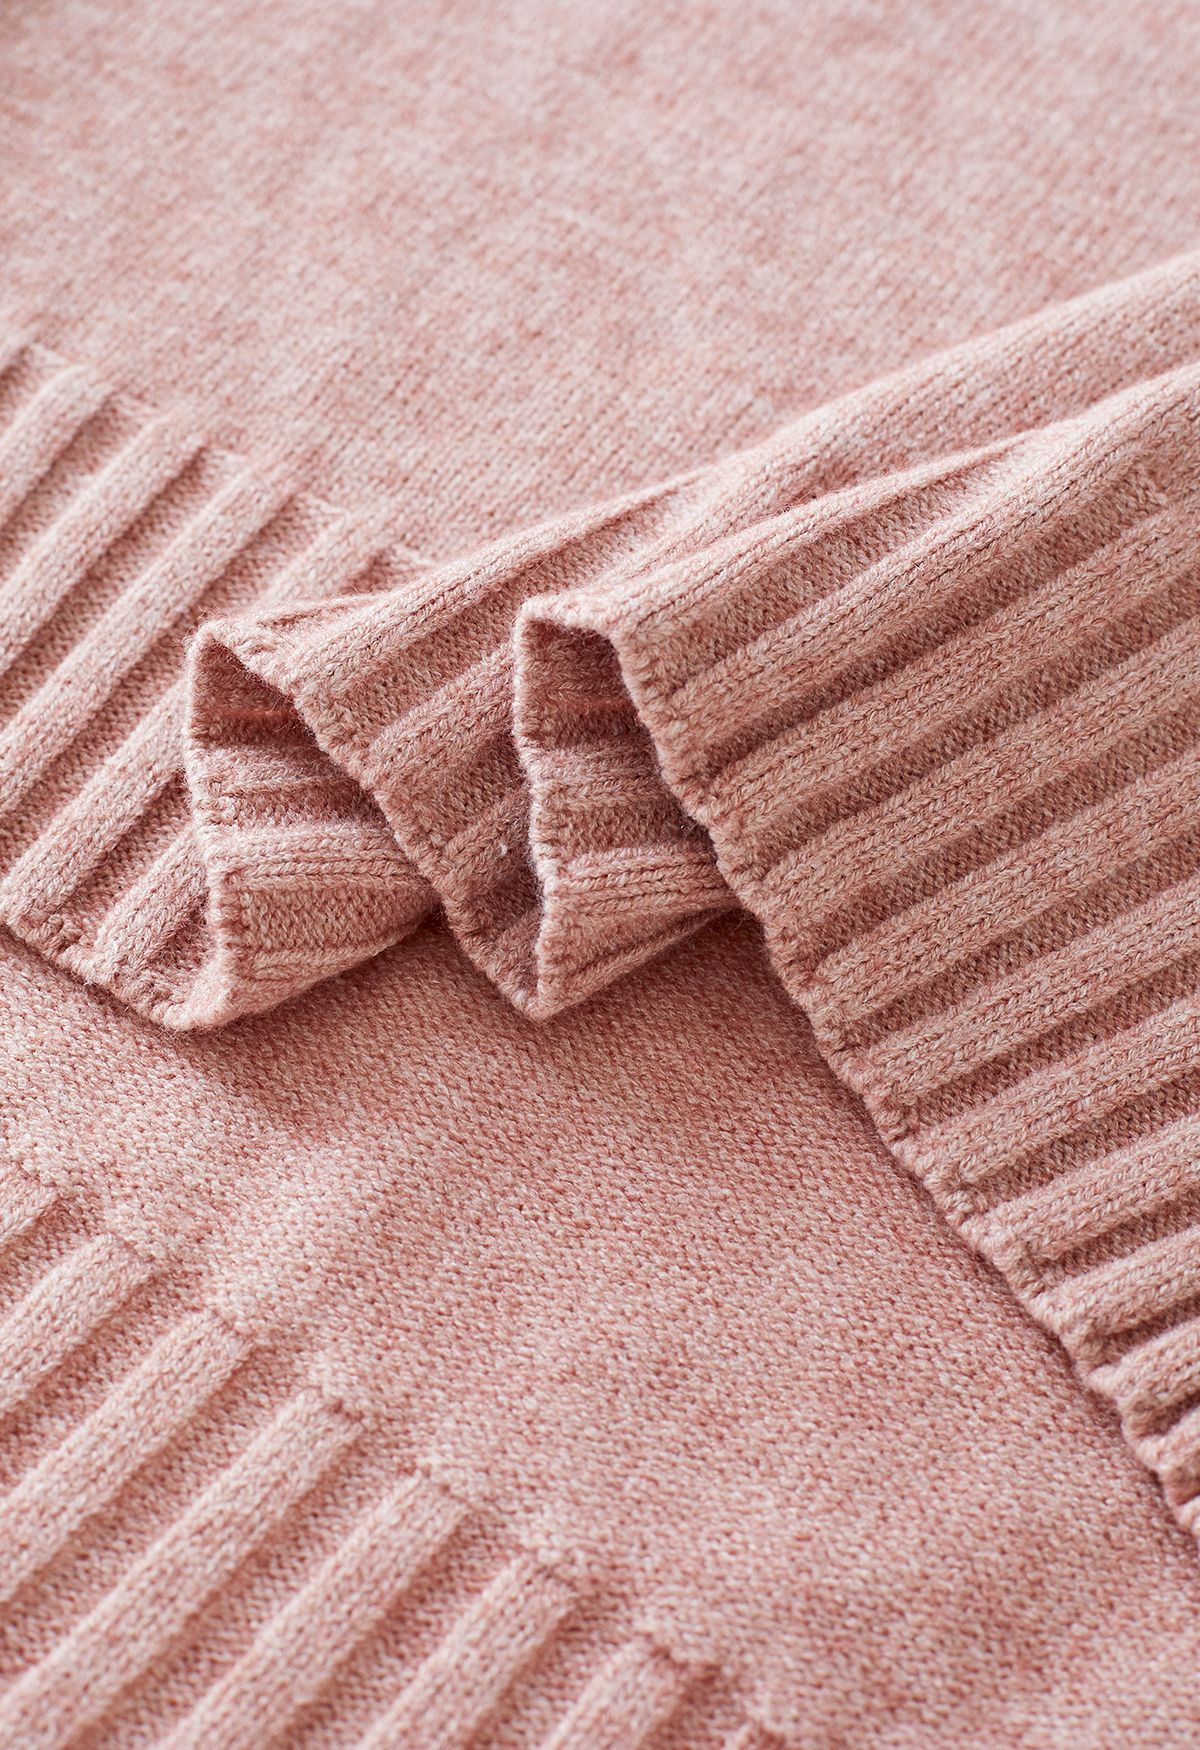 Maglione con polsini abbottonati a collo alto e pantaloni in maglia in rosa